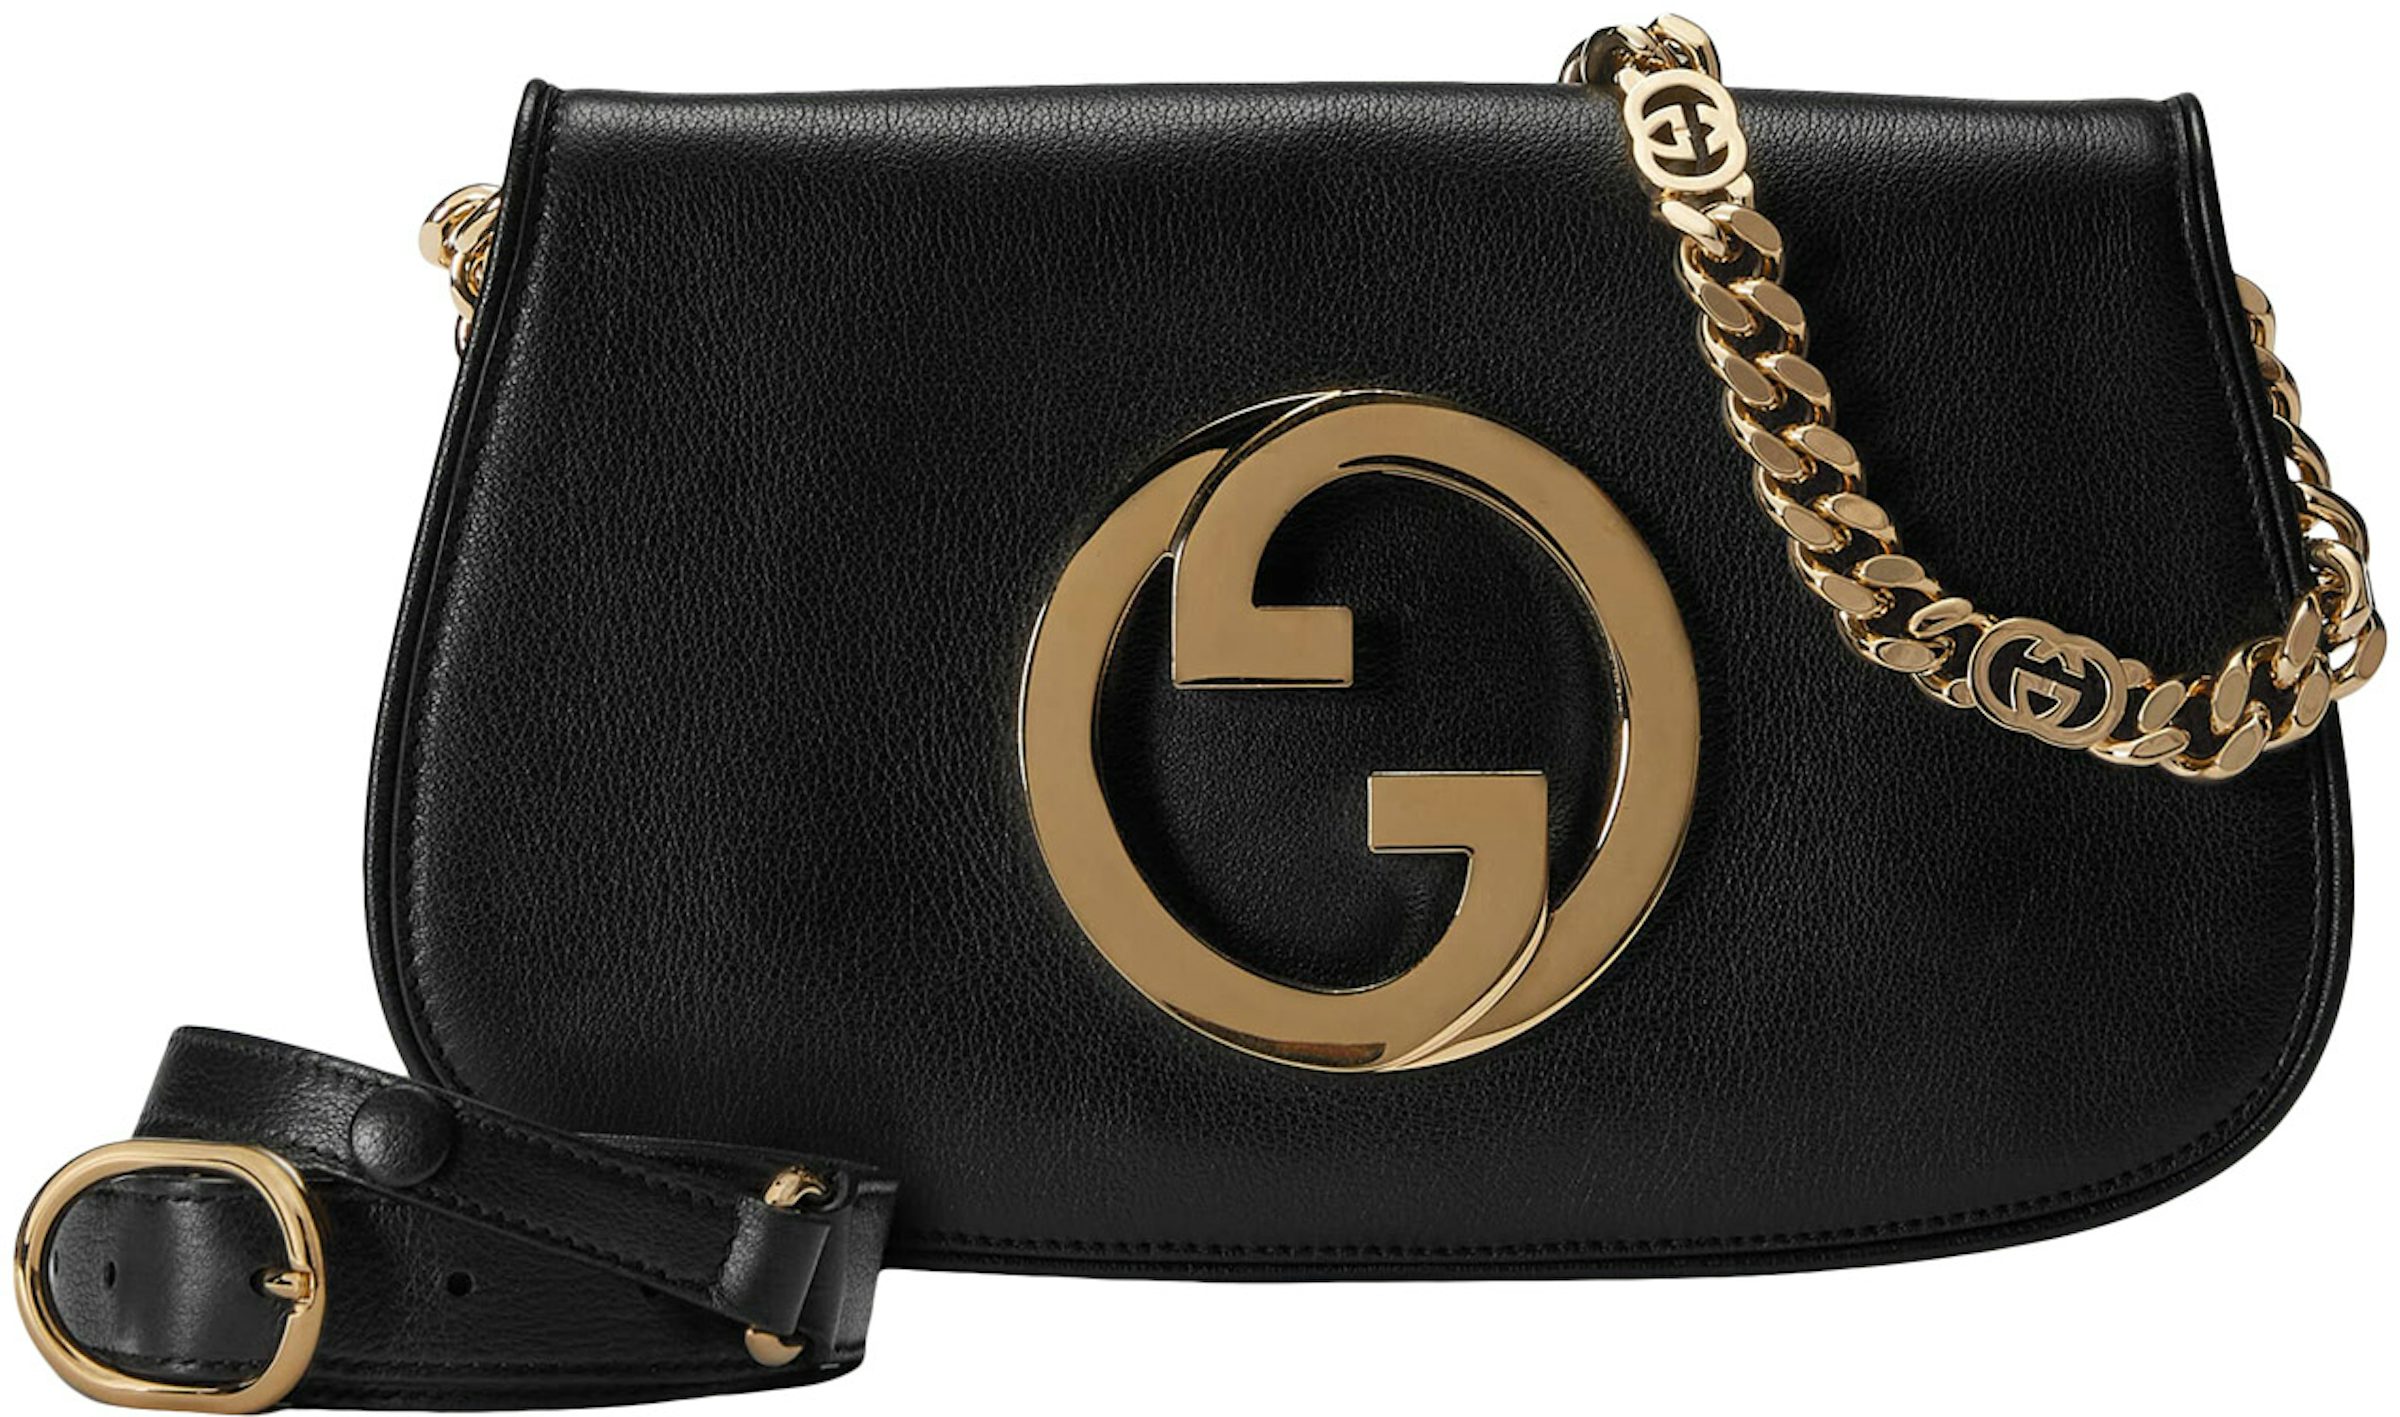 Gucci Blondie top handle bag in black leather